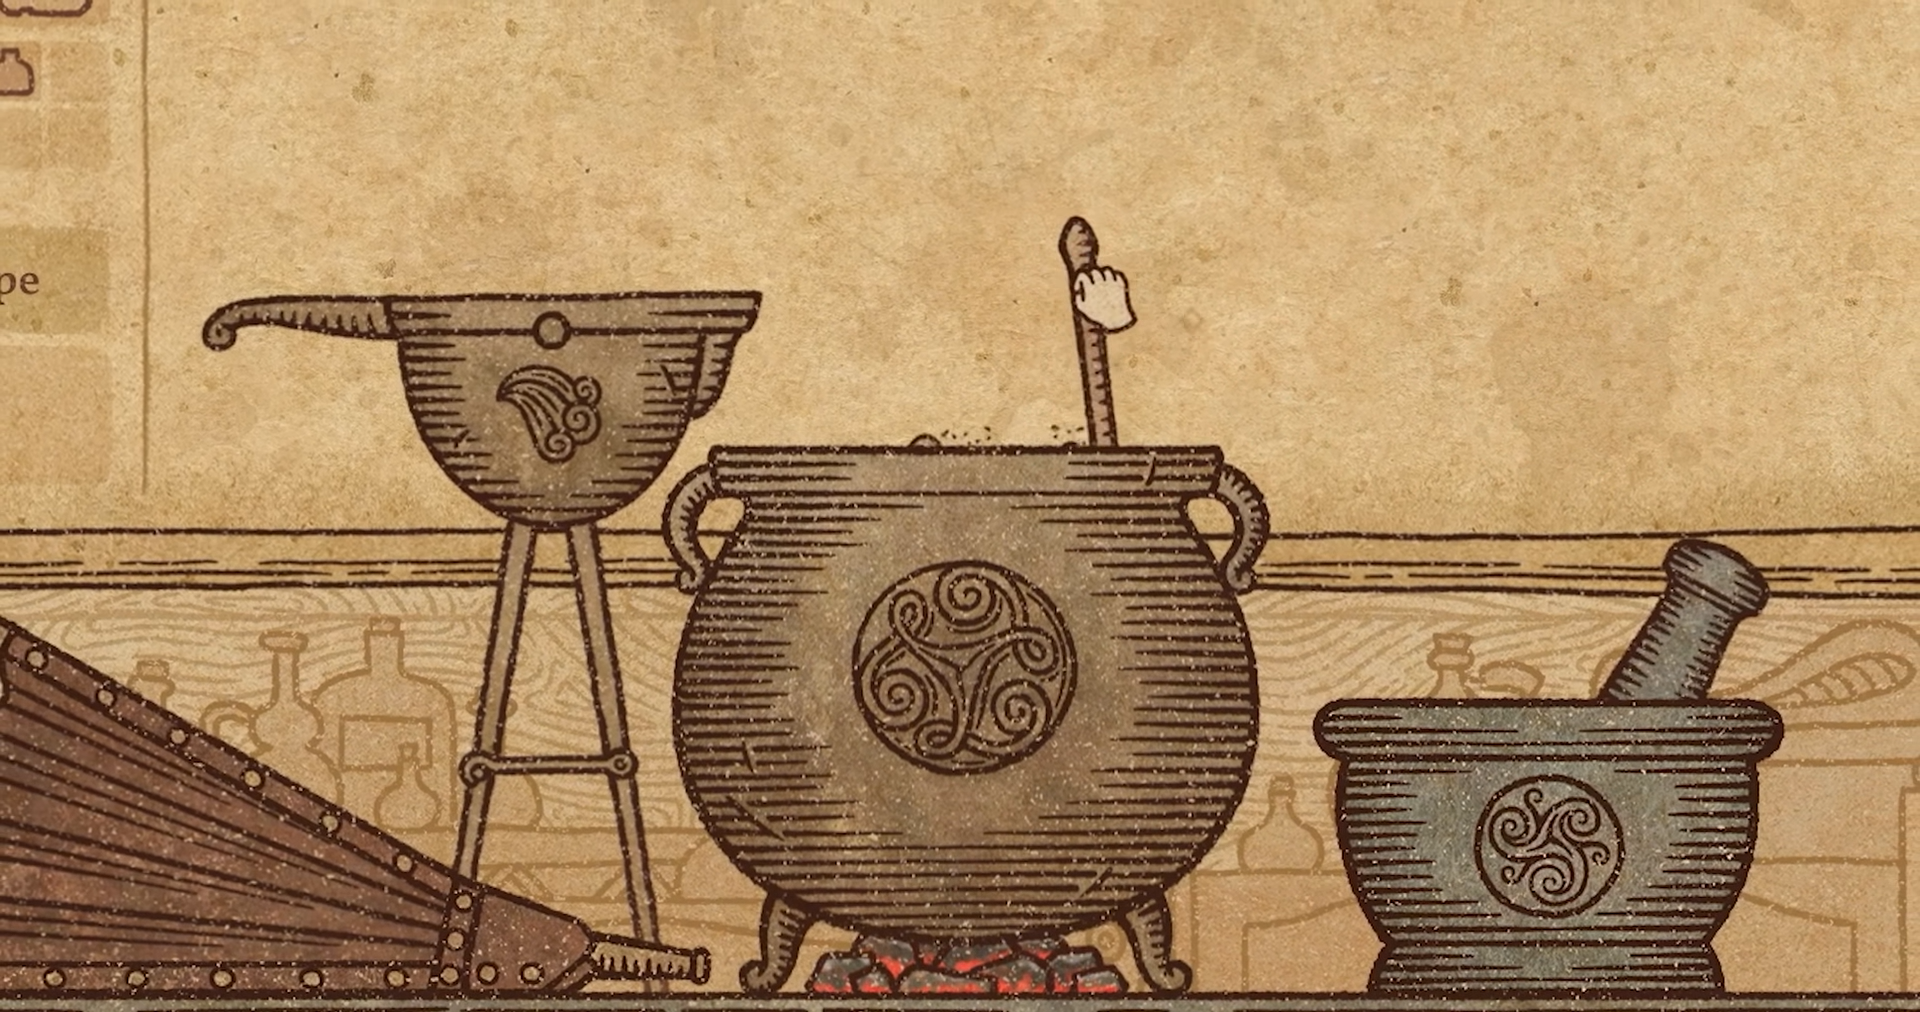 Potion Craft появится в раннем доступе в Steam 21 сентября